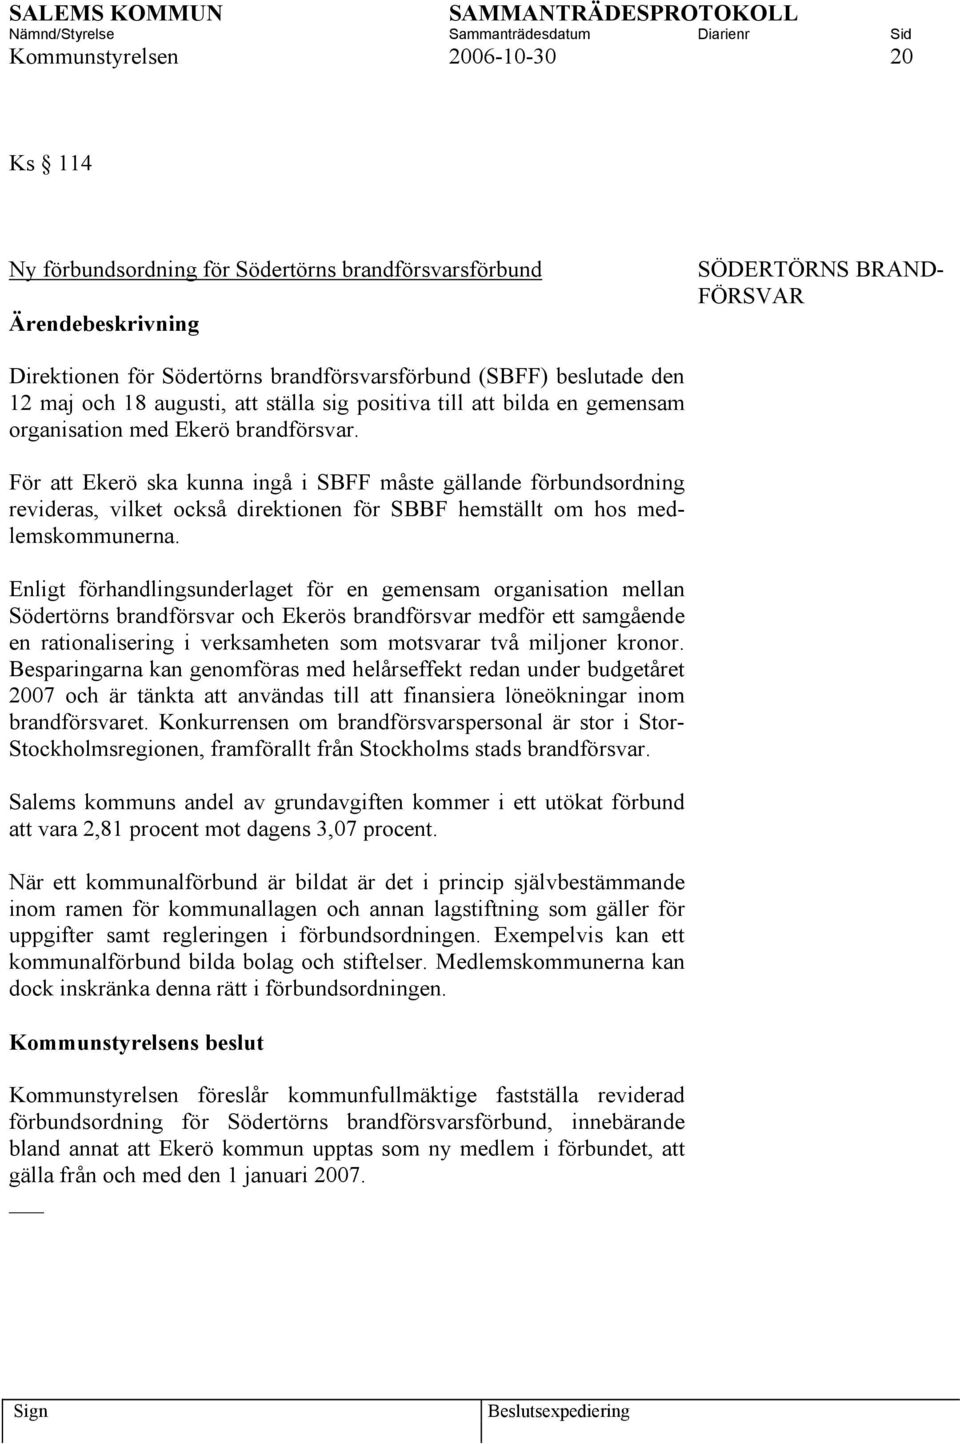 För att Ekerö ska kunna ingå i SBFF måste gällande förbundsordning revideras, vilket också direktionen för SBBF hemställt om hos medlemskommunerna.